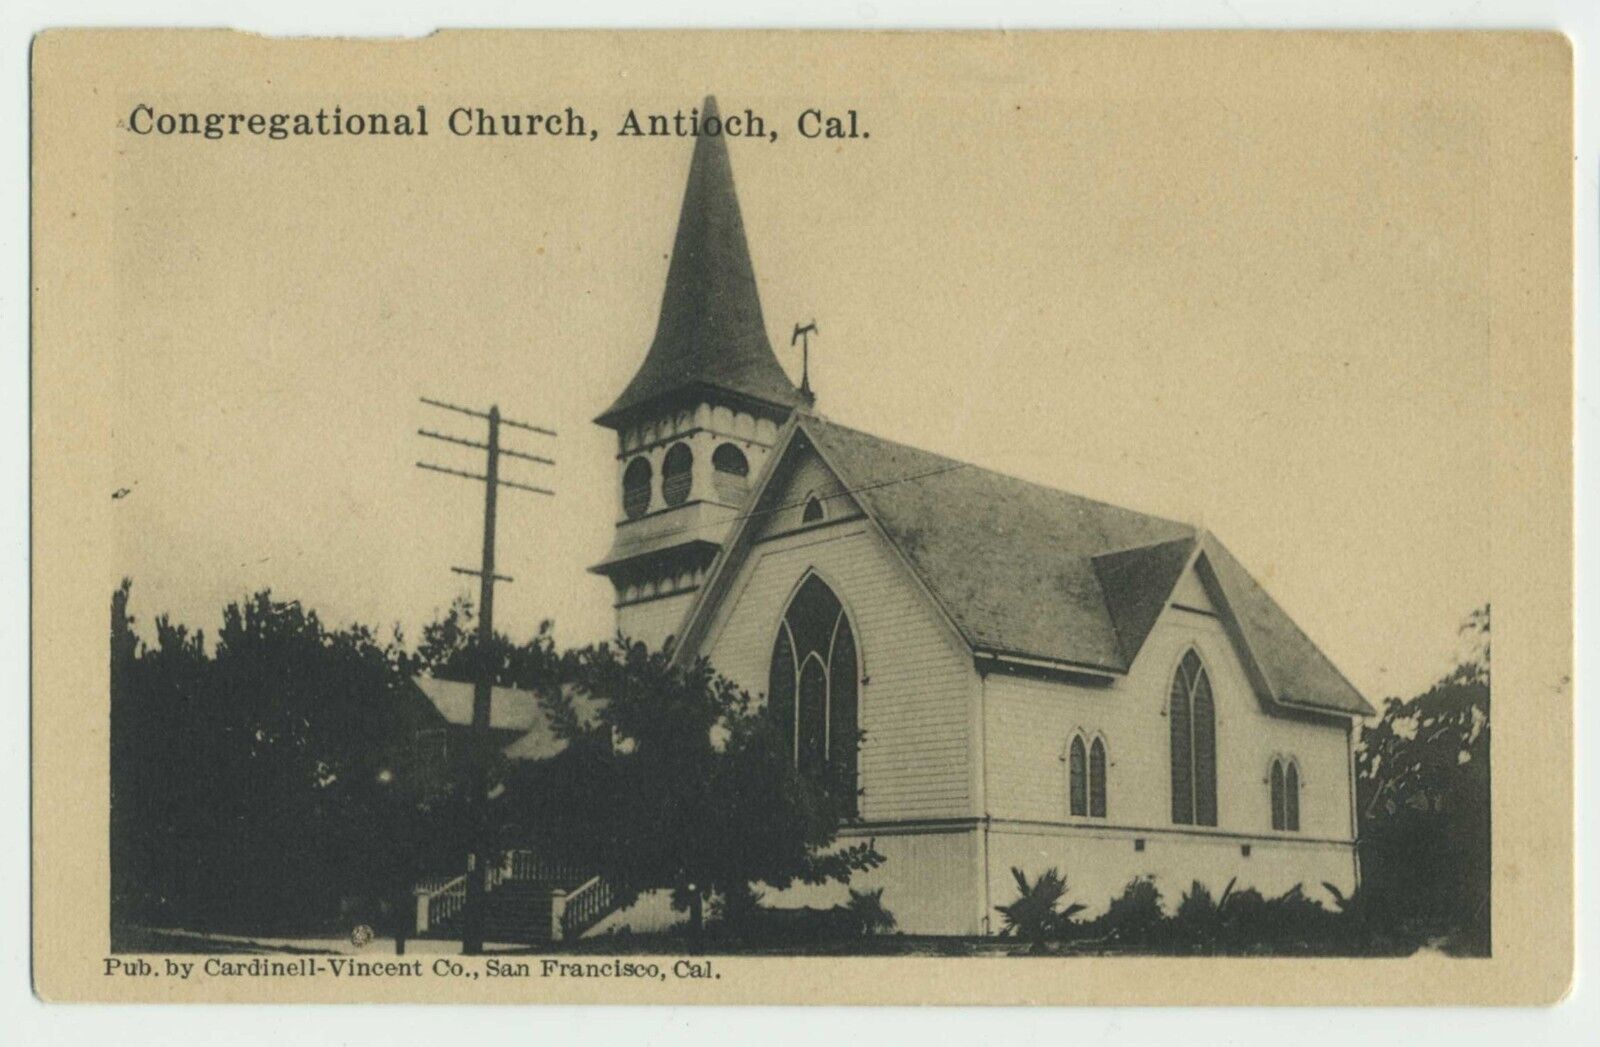 Congregational Church Antioch CA Cardinell-Vincent postcard